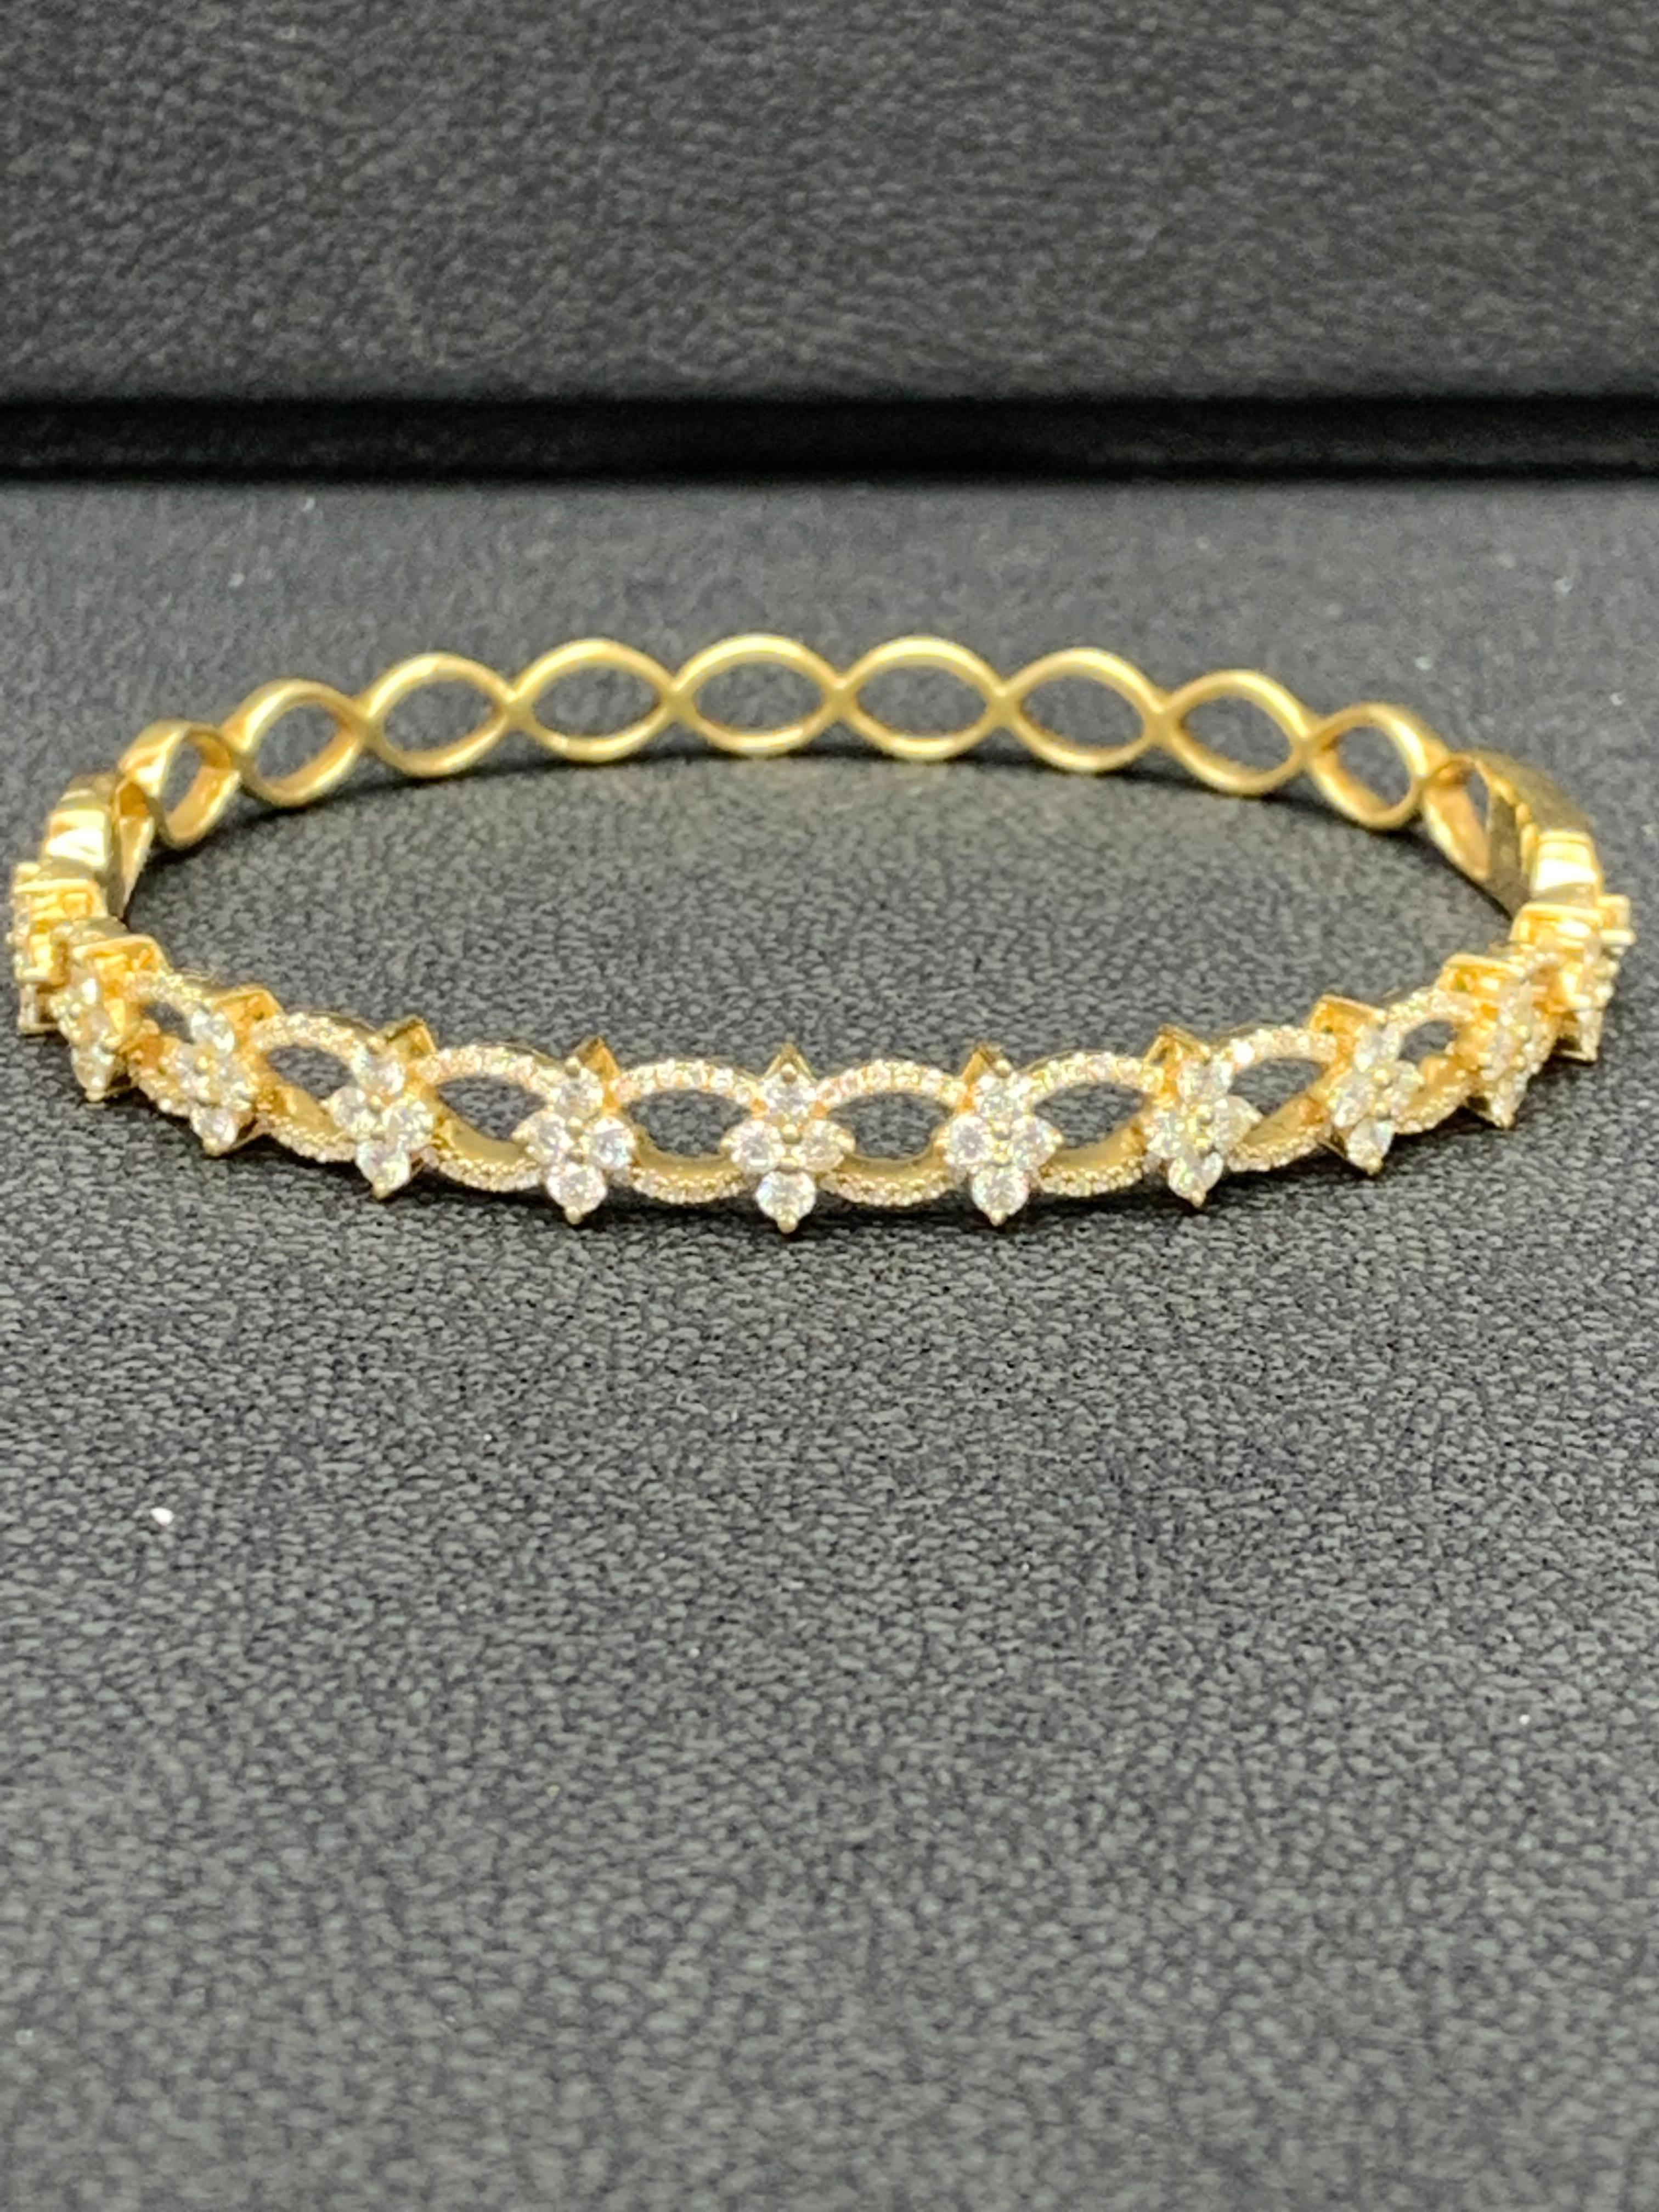 Un magnifique et important bracelet mettant en valeur 2,00 carats de diamants ronds de taille brillant, petits et grands, sertis dans une monture ajourée au design complexe en or jaune 18k.

Style disponible dans différentes gammes de prix. Les prix